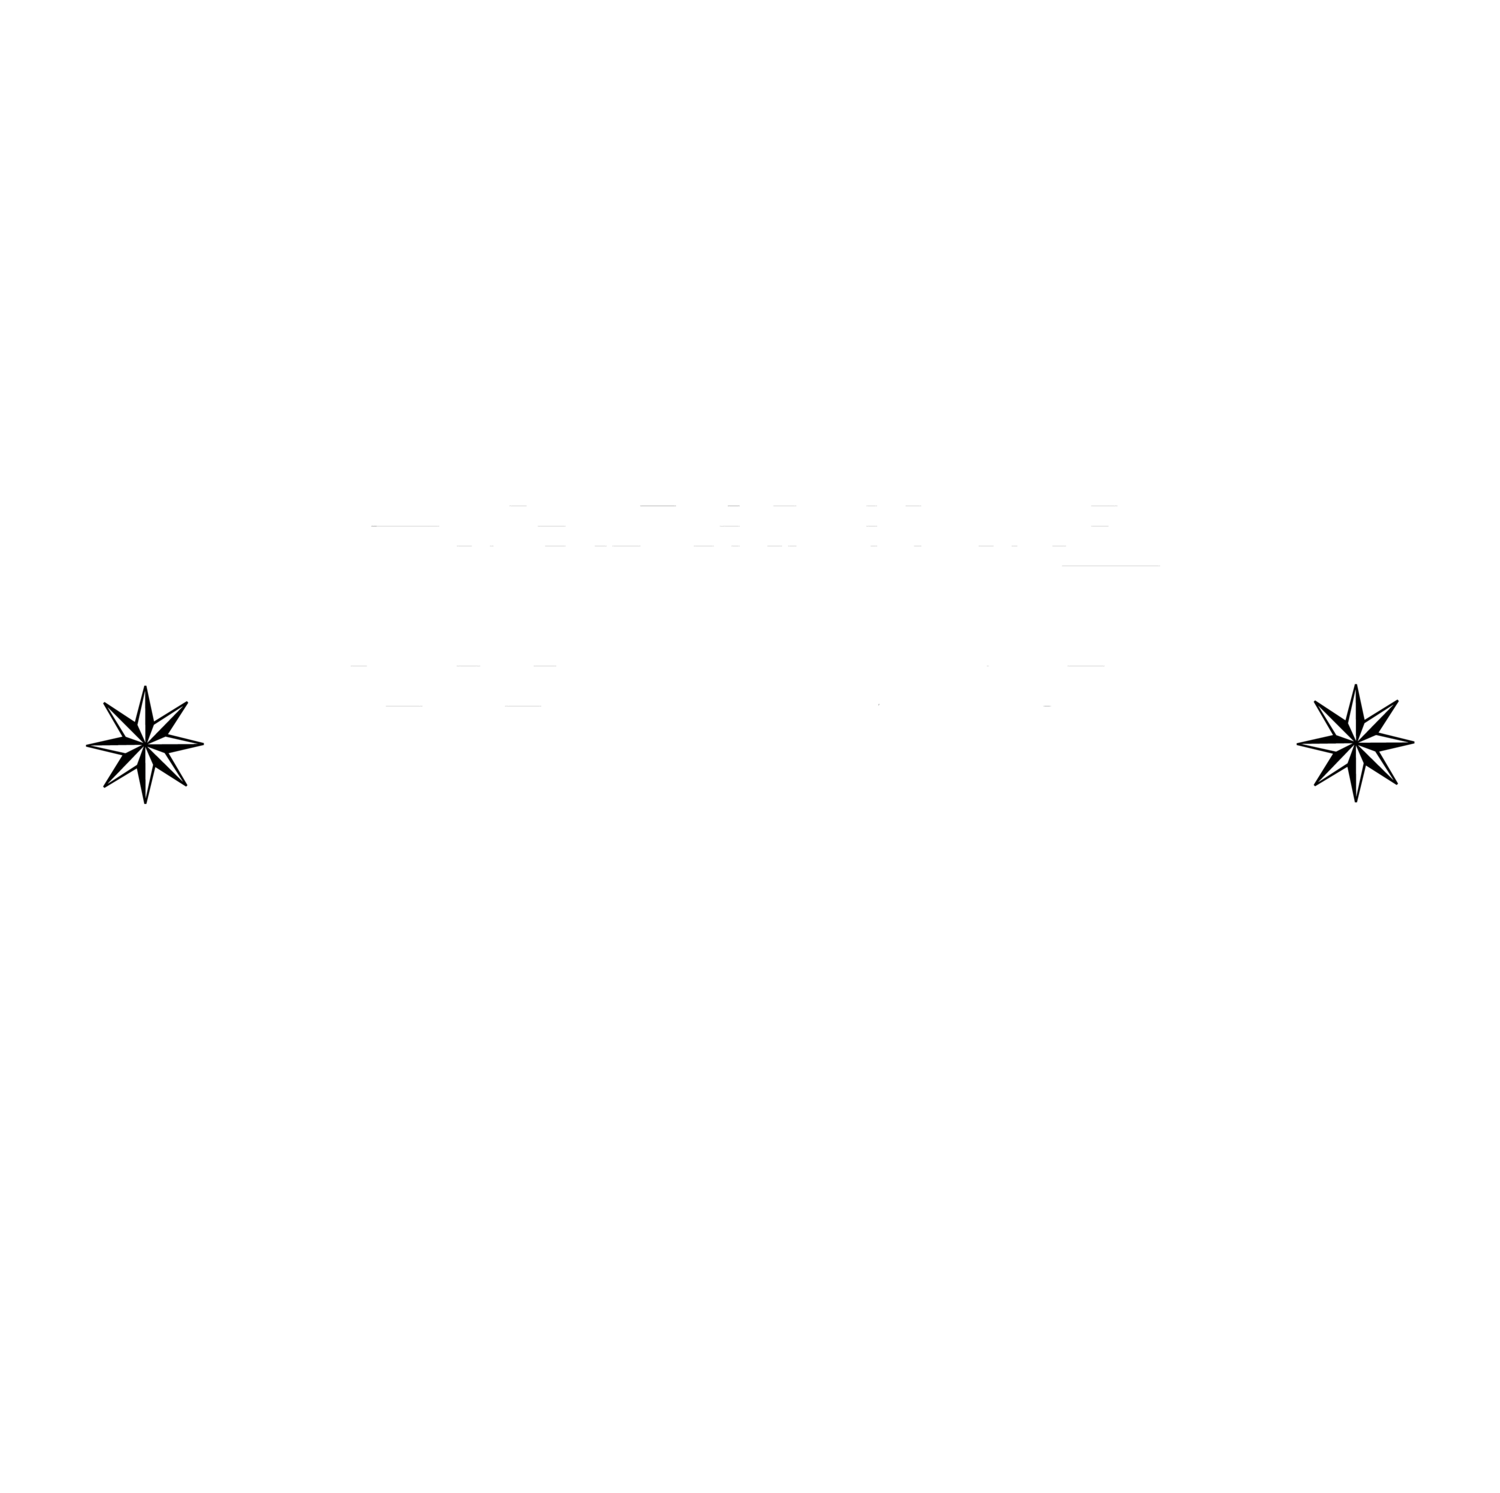 Chapman Design